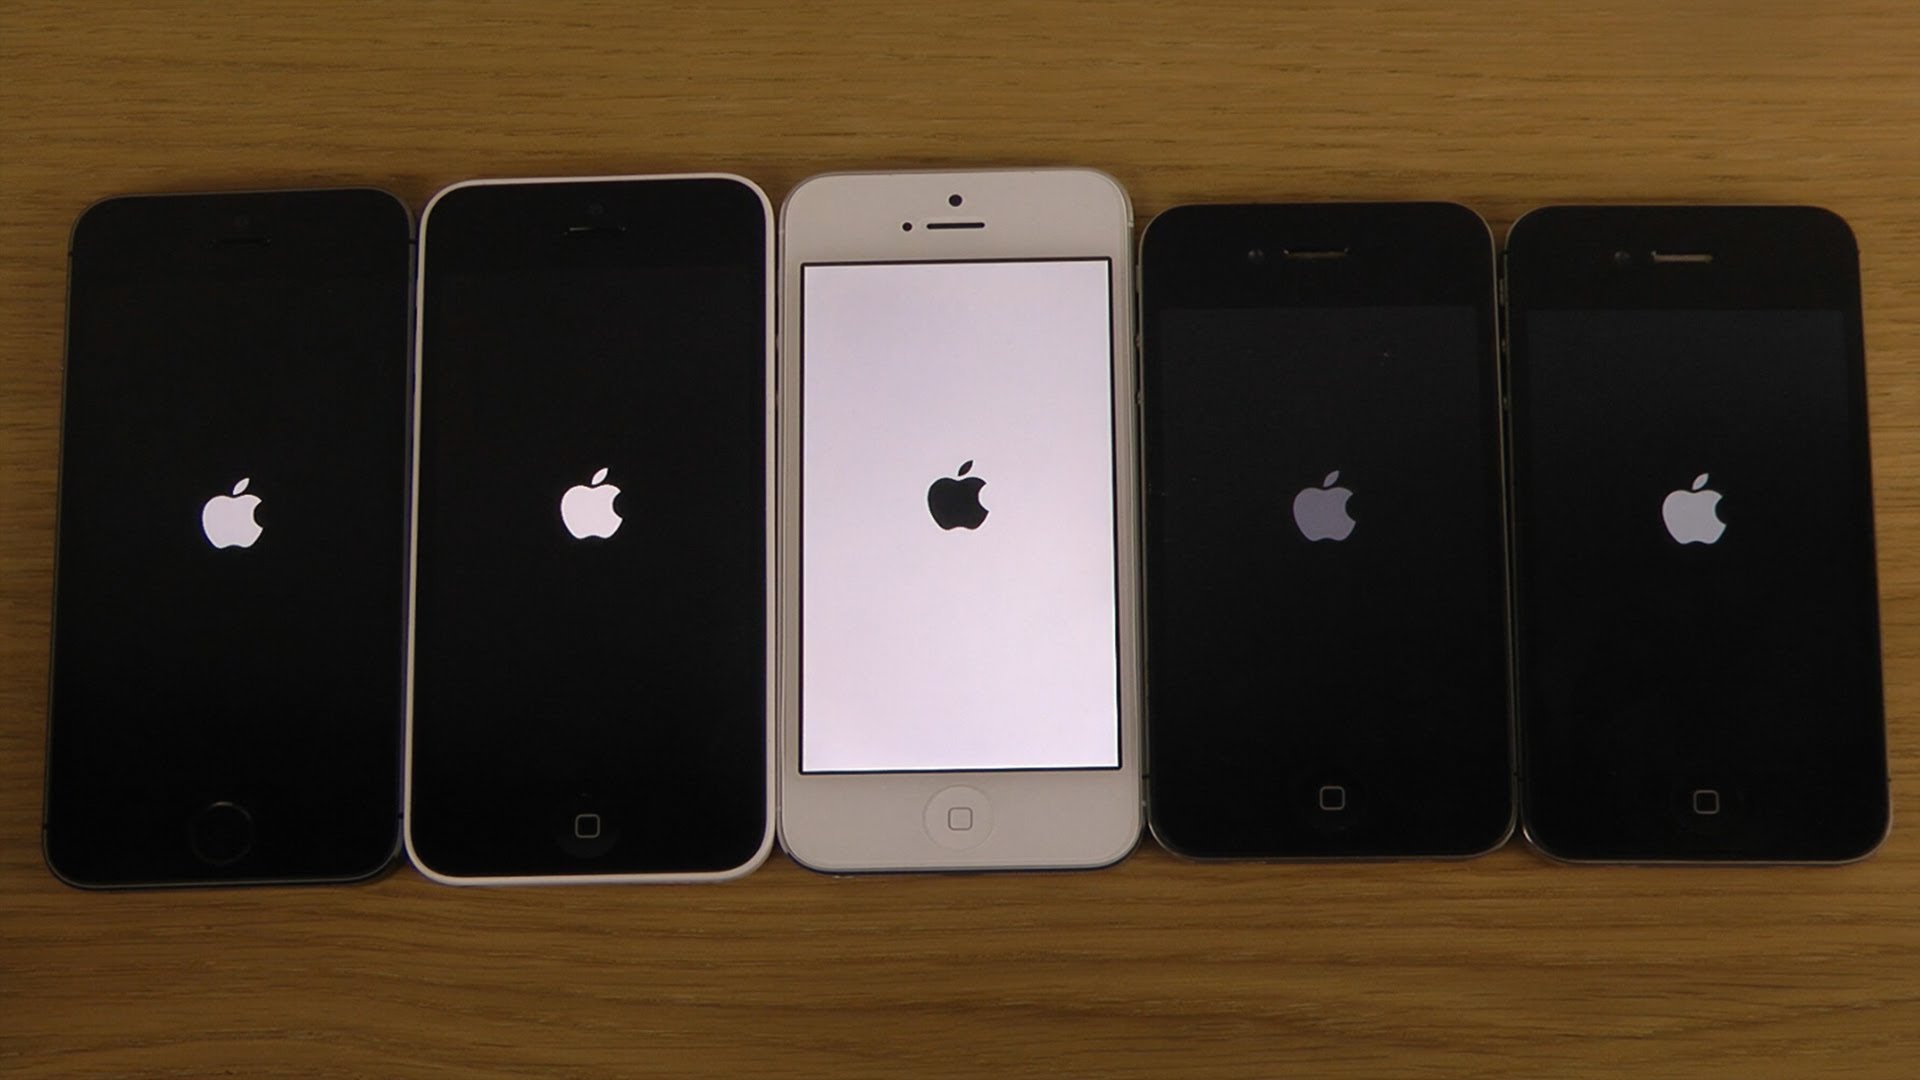 Iphone 4 vs 5s vs iphone 6